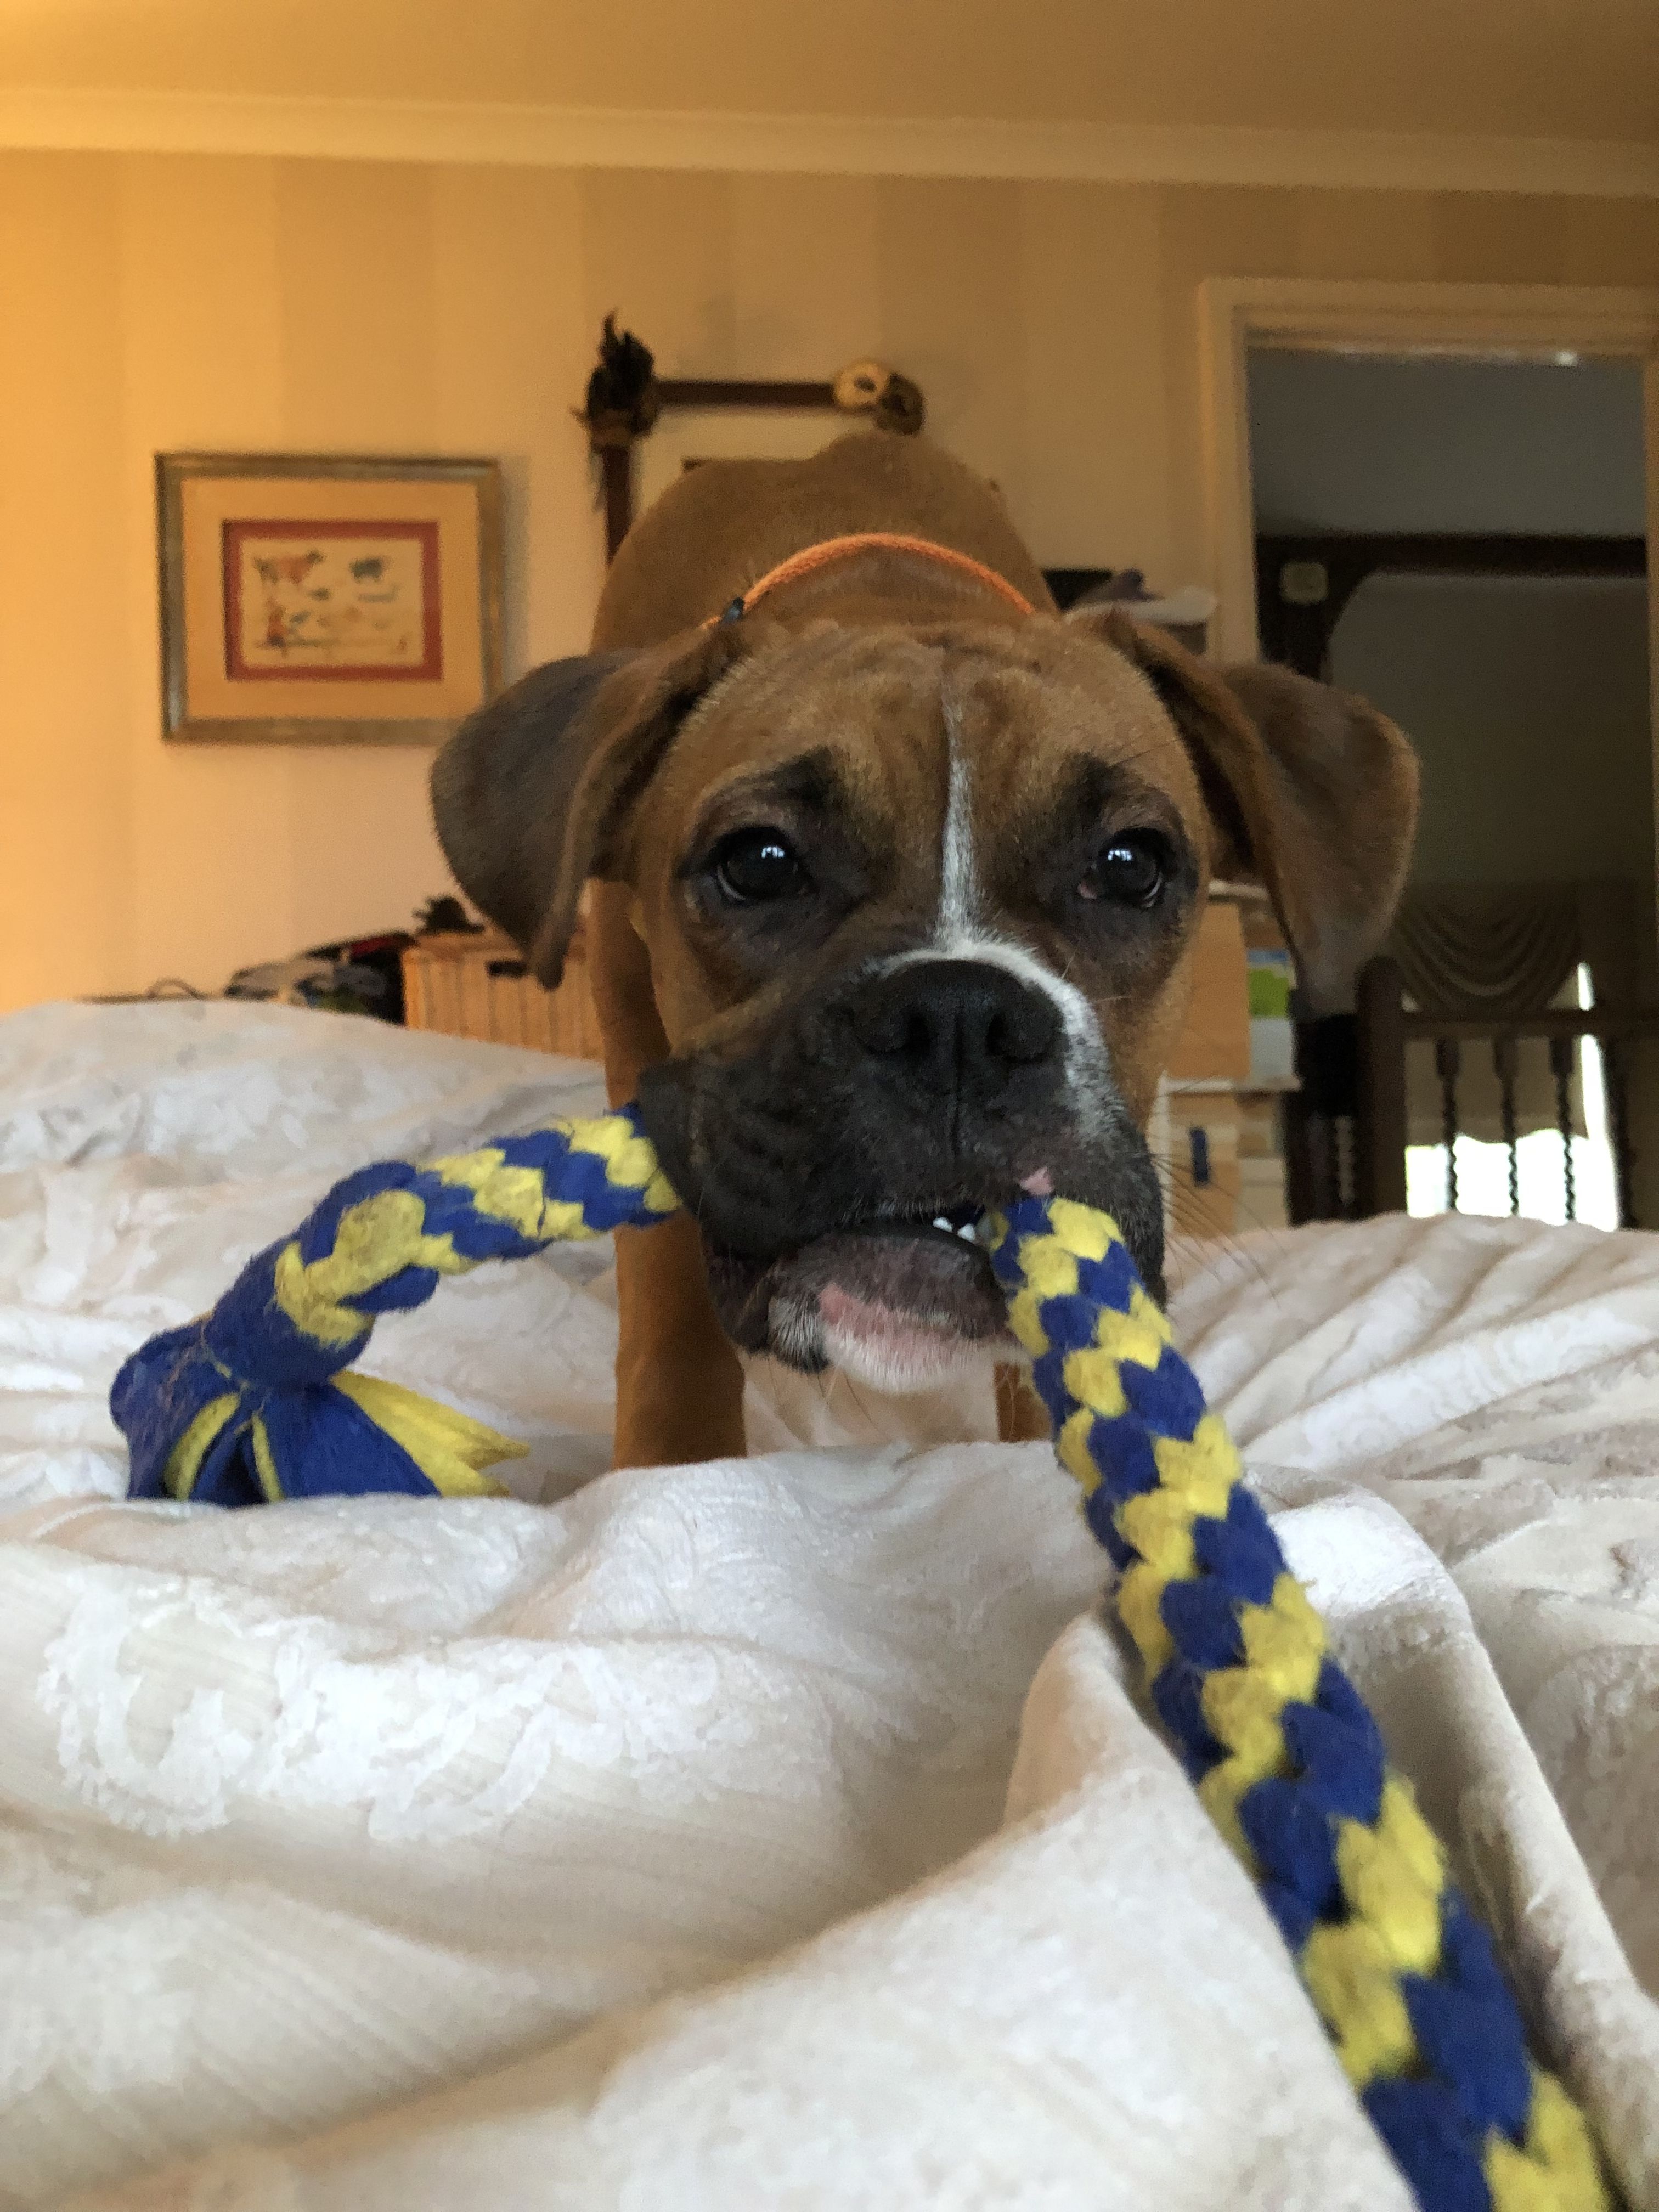 Boxer Dog pulling its tug toy